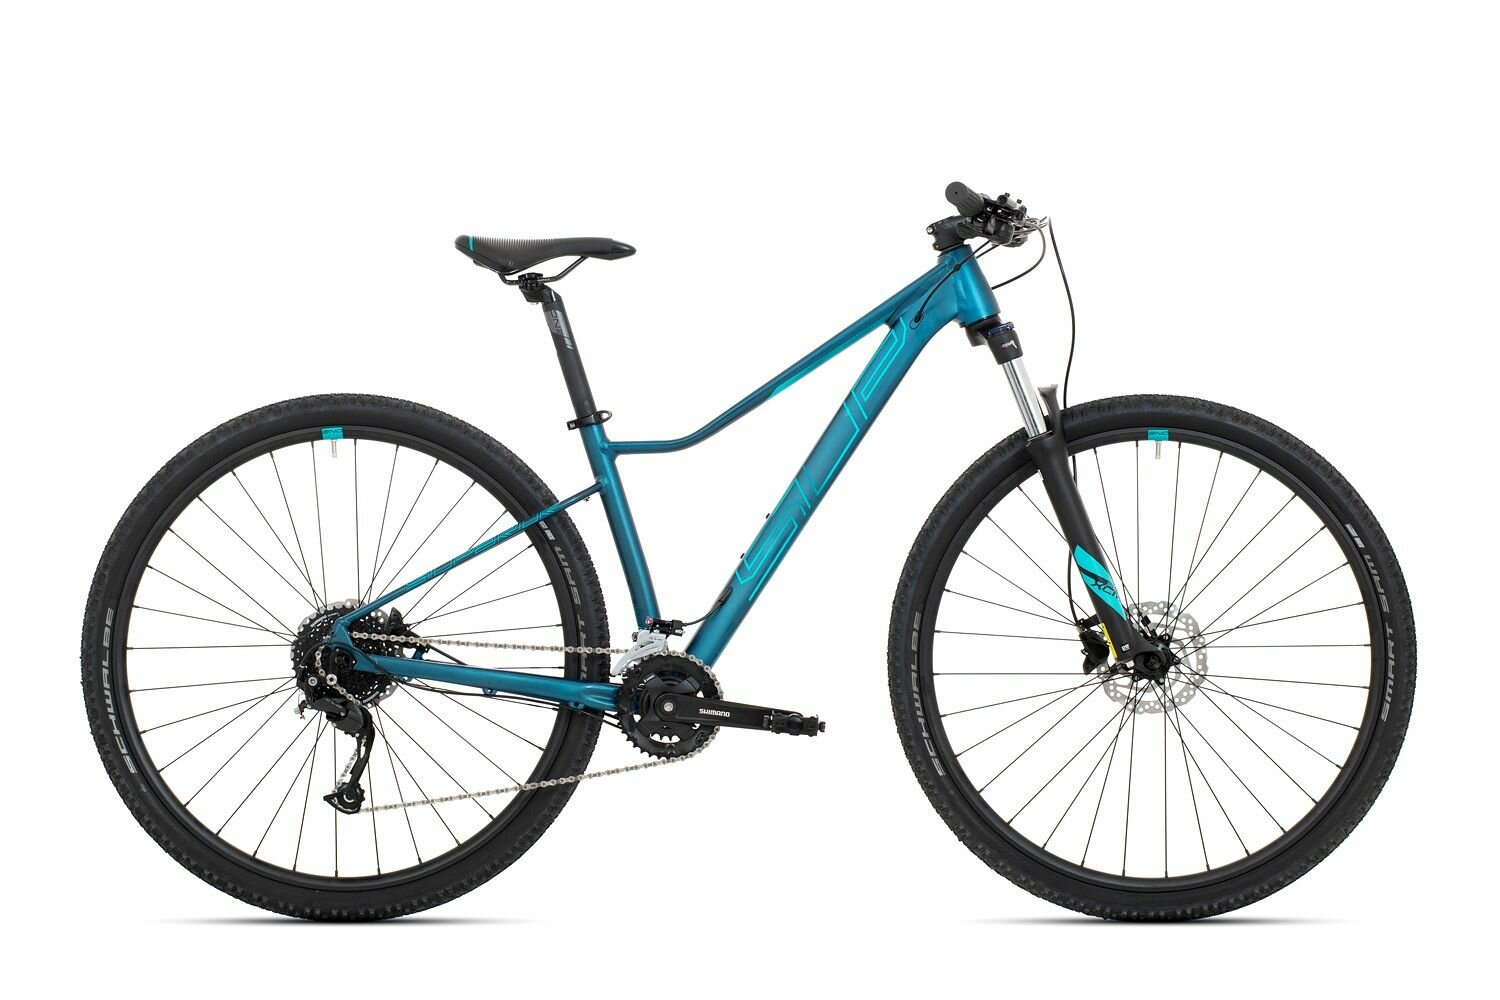 Велосипед Superior XC 859 W (2021) (Велосипед Superior XC 859 W Dark Petrol/Turquoise 2021 S , 801.2021.29049)